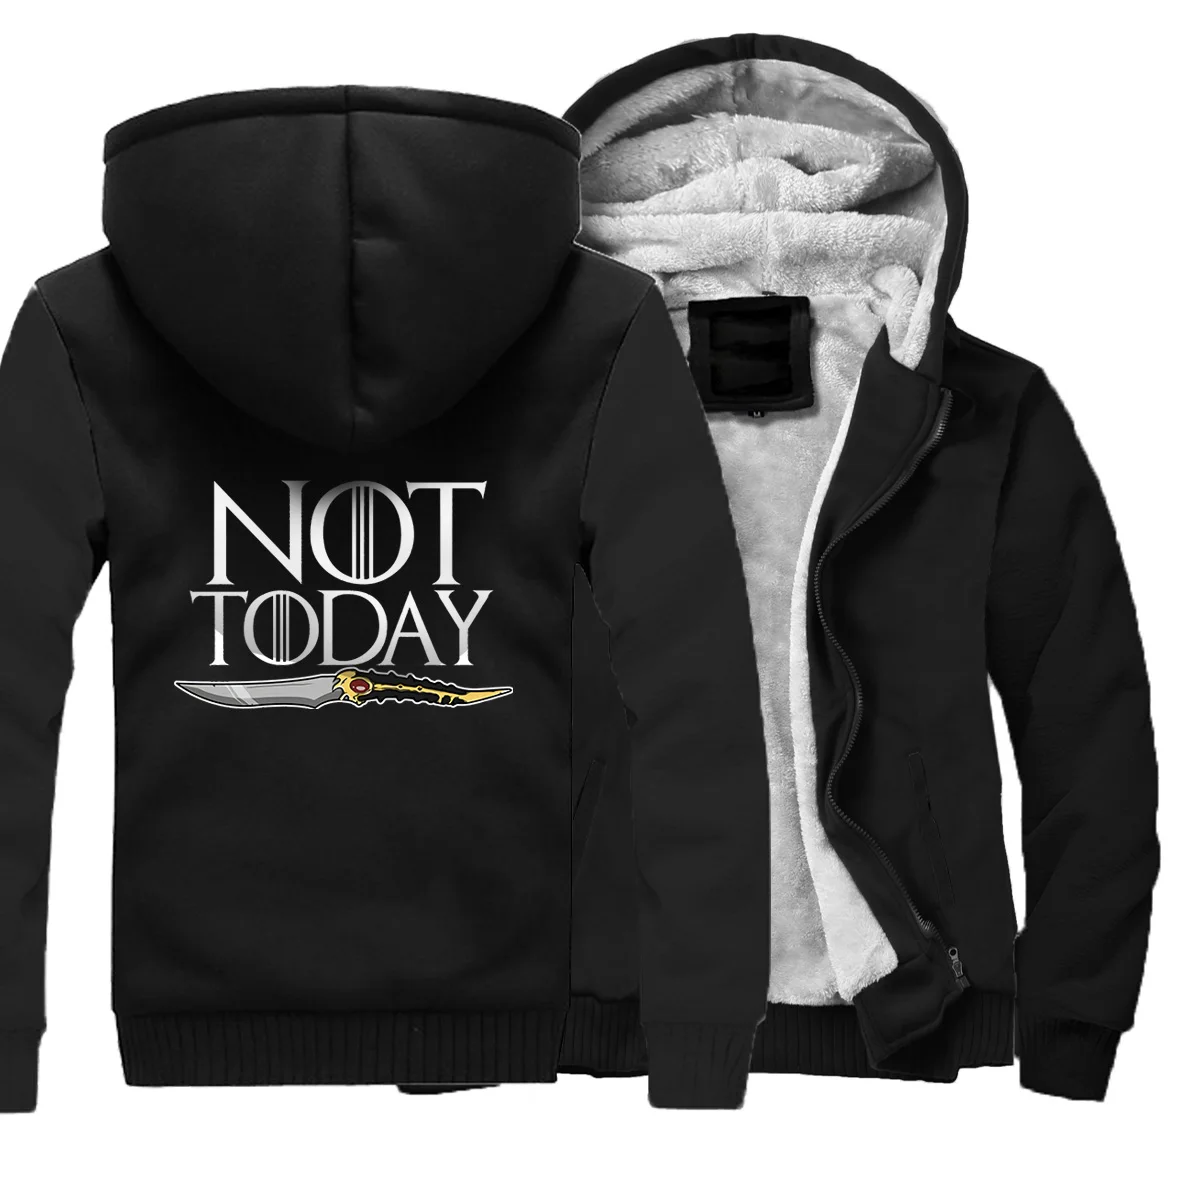 NOT TODAY Print Hoodies Men Thick Sweatshirts Fleece Coat Winter Warm Zipper Jackets Sportswear game of Thrones Loose Tops - Цвет: black 6